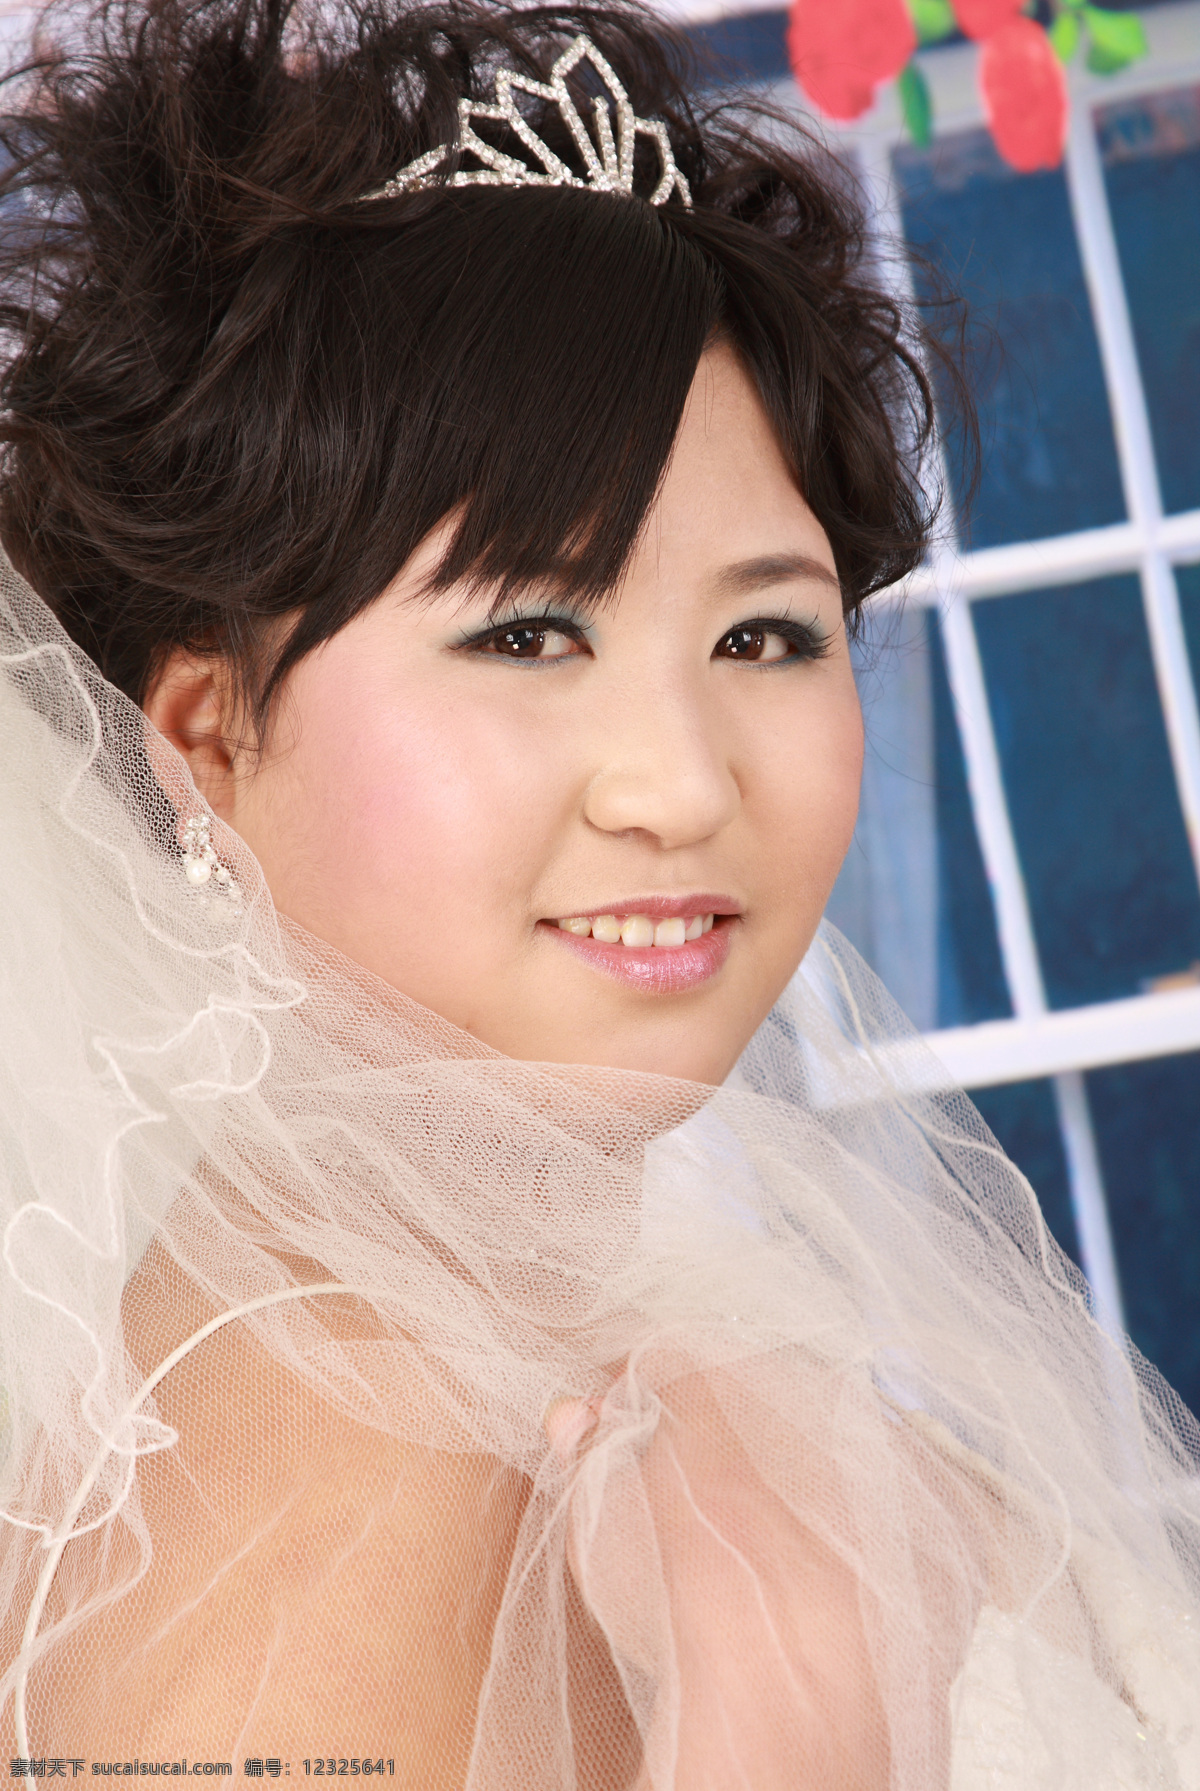 结婚照 婚纱 结婚图片 人物摄影 人物图库 新娘 psd源文件 儿童 写真 相册 模板